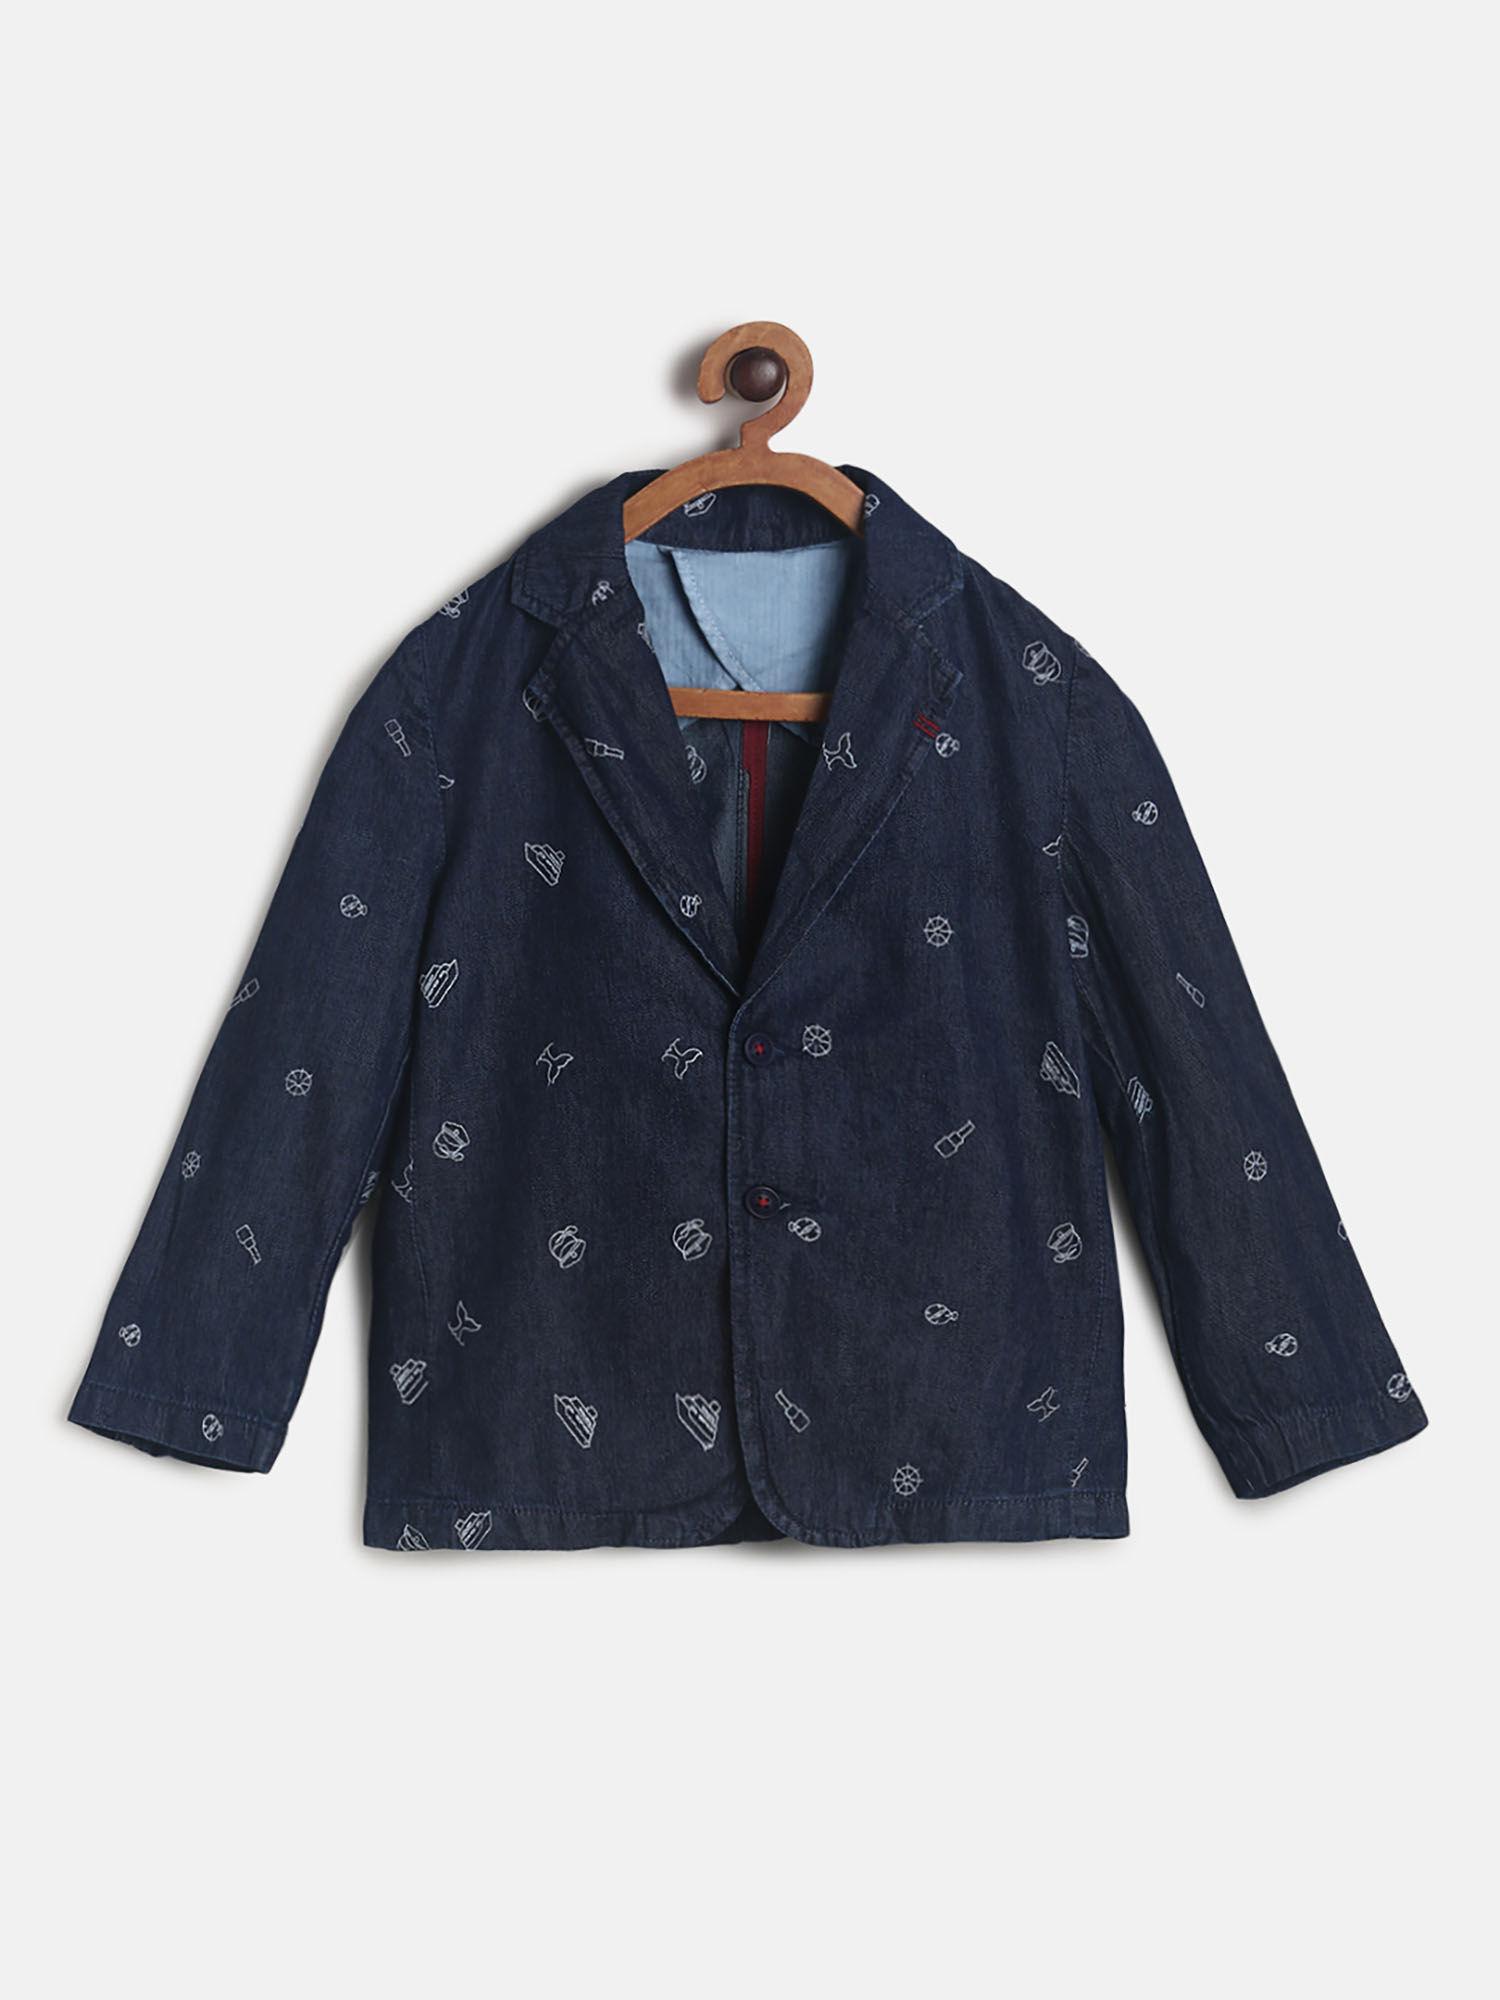 boy's dark blue cotton embroidered blazer